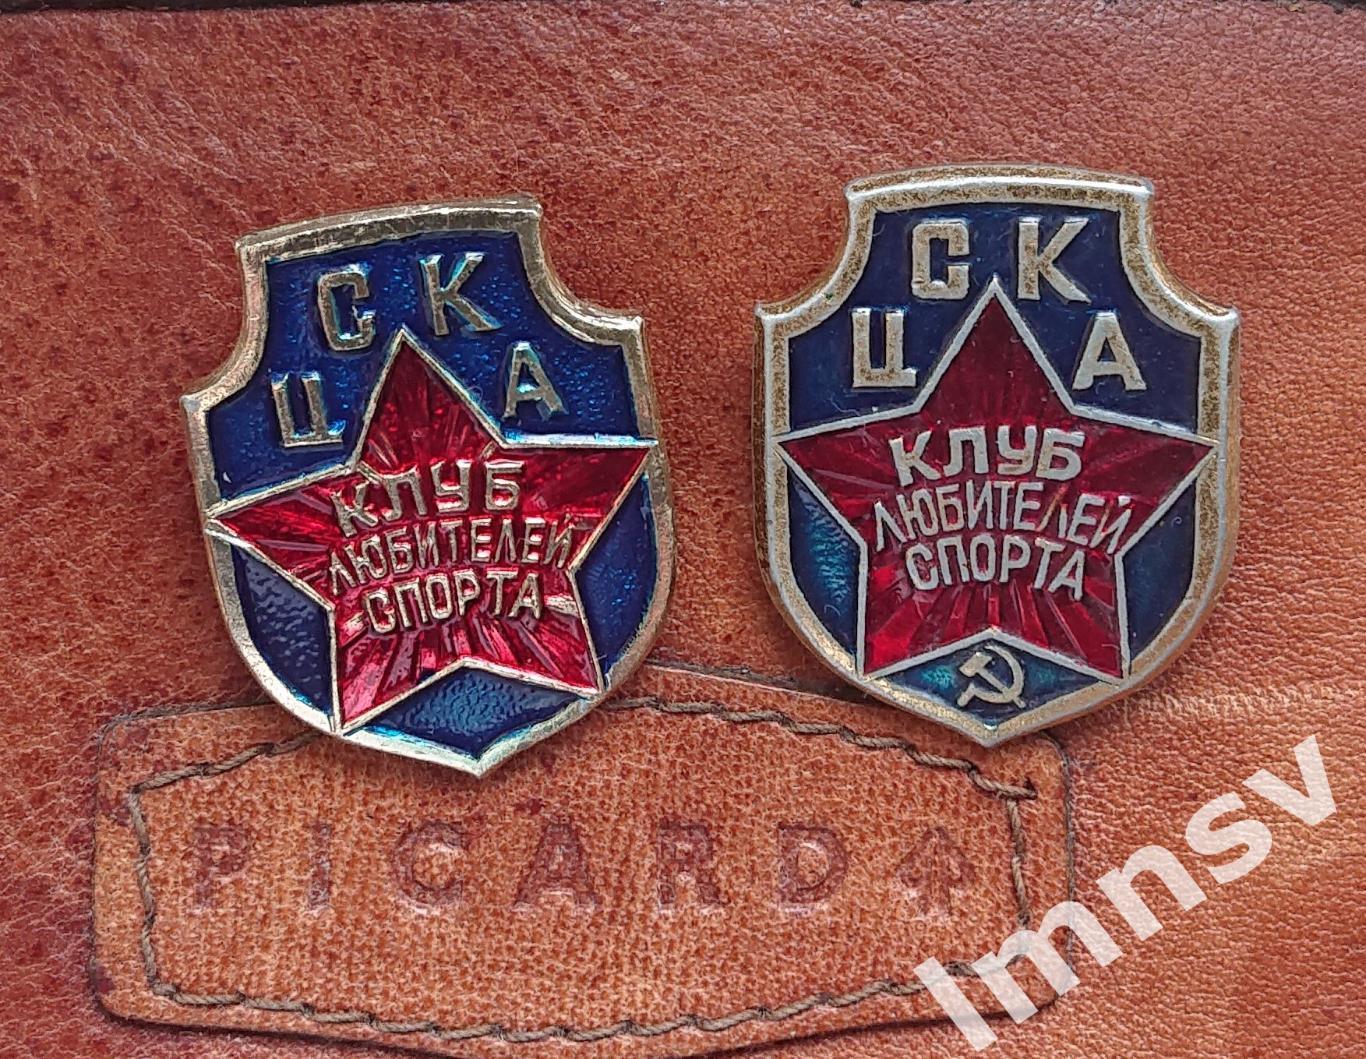 ЦСКА Клуб Любителей Спорта СССР (знак справа)